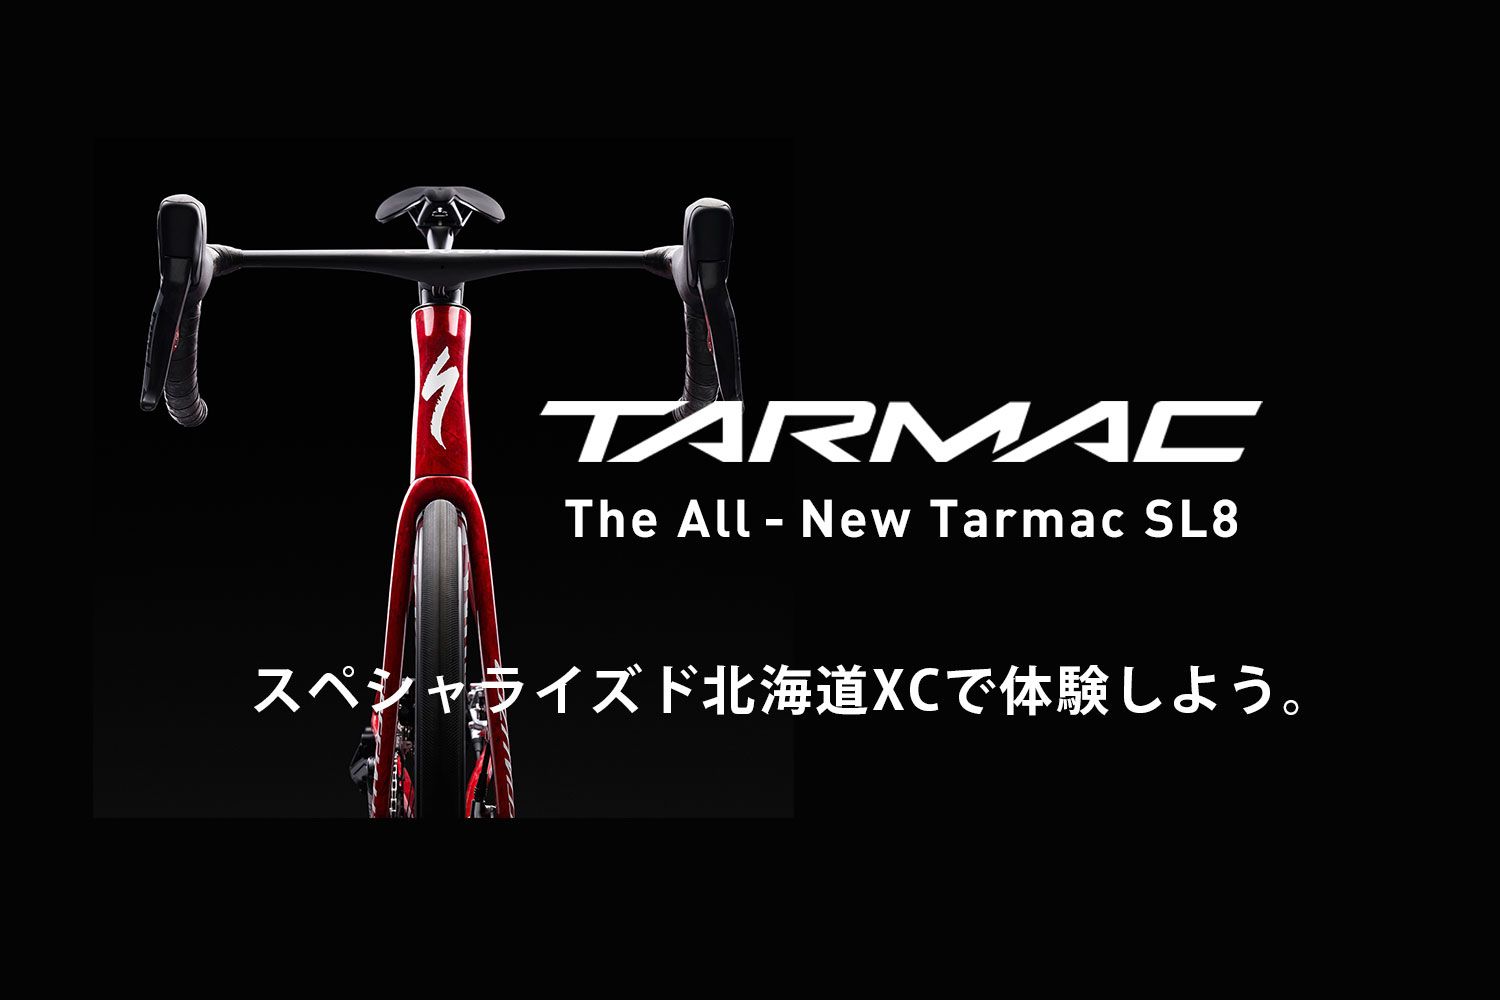 すべてを征す一台。New Tarmac SL8をスペシャライズド 北海道XCで体験しよう。